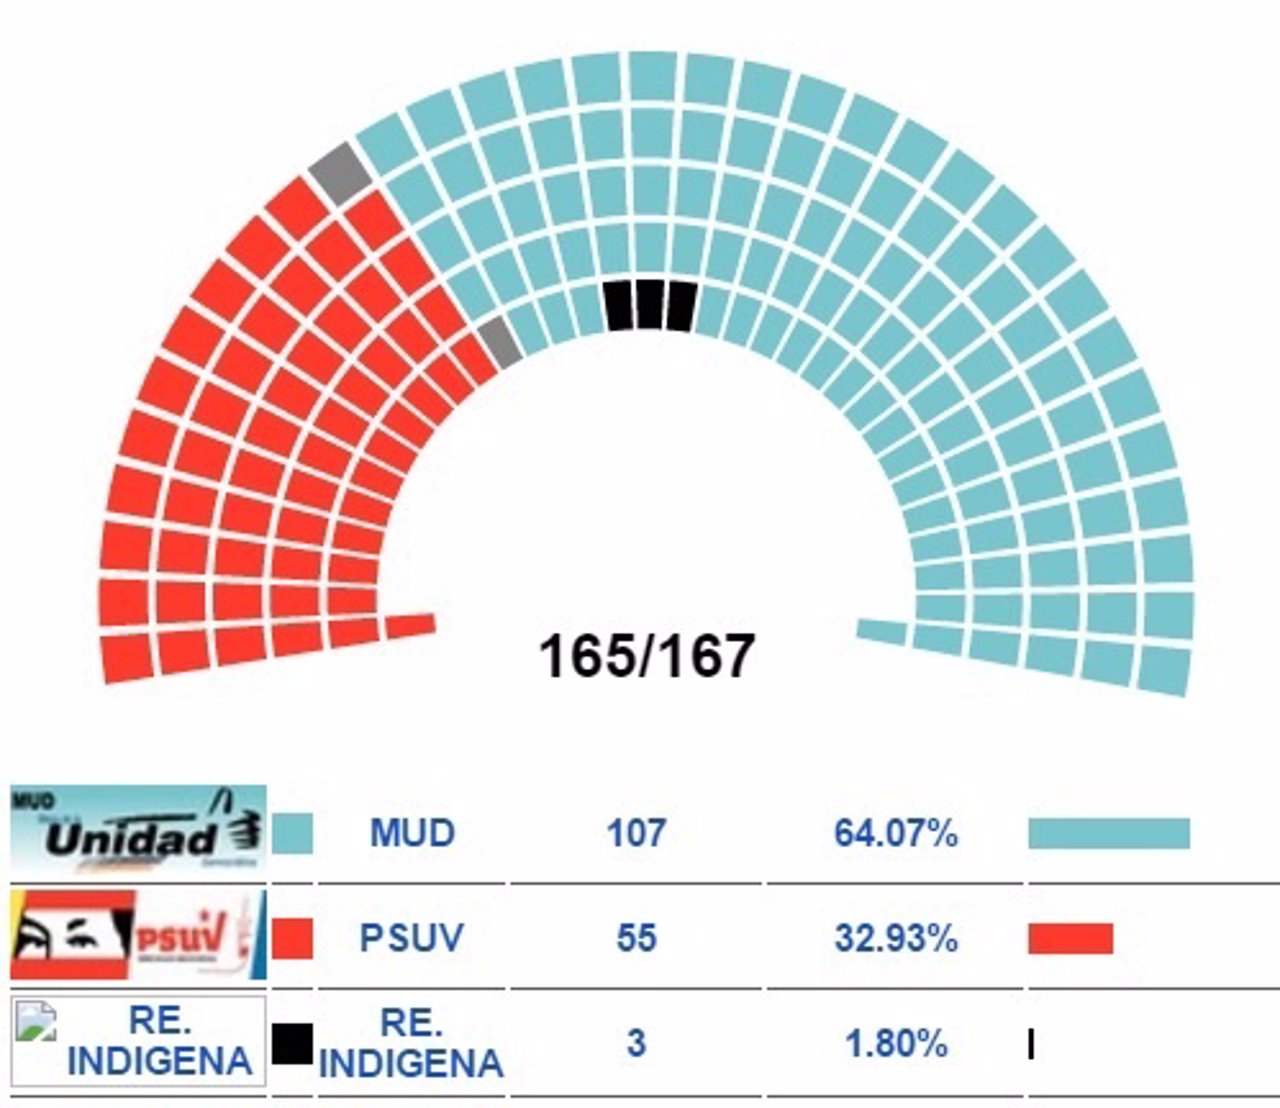 MUd alcanza 112 diputados en la Asamblea Nacional de Venezuela 